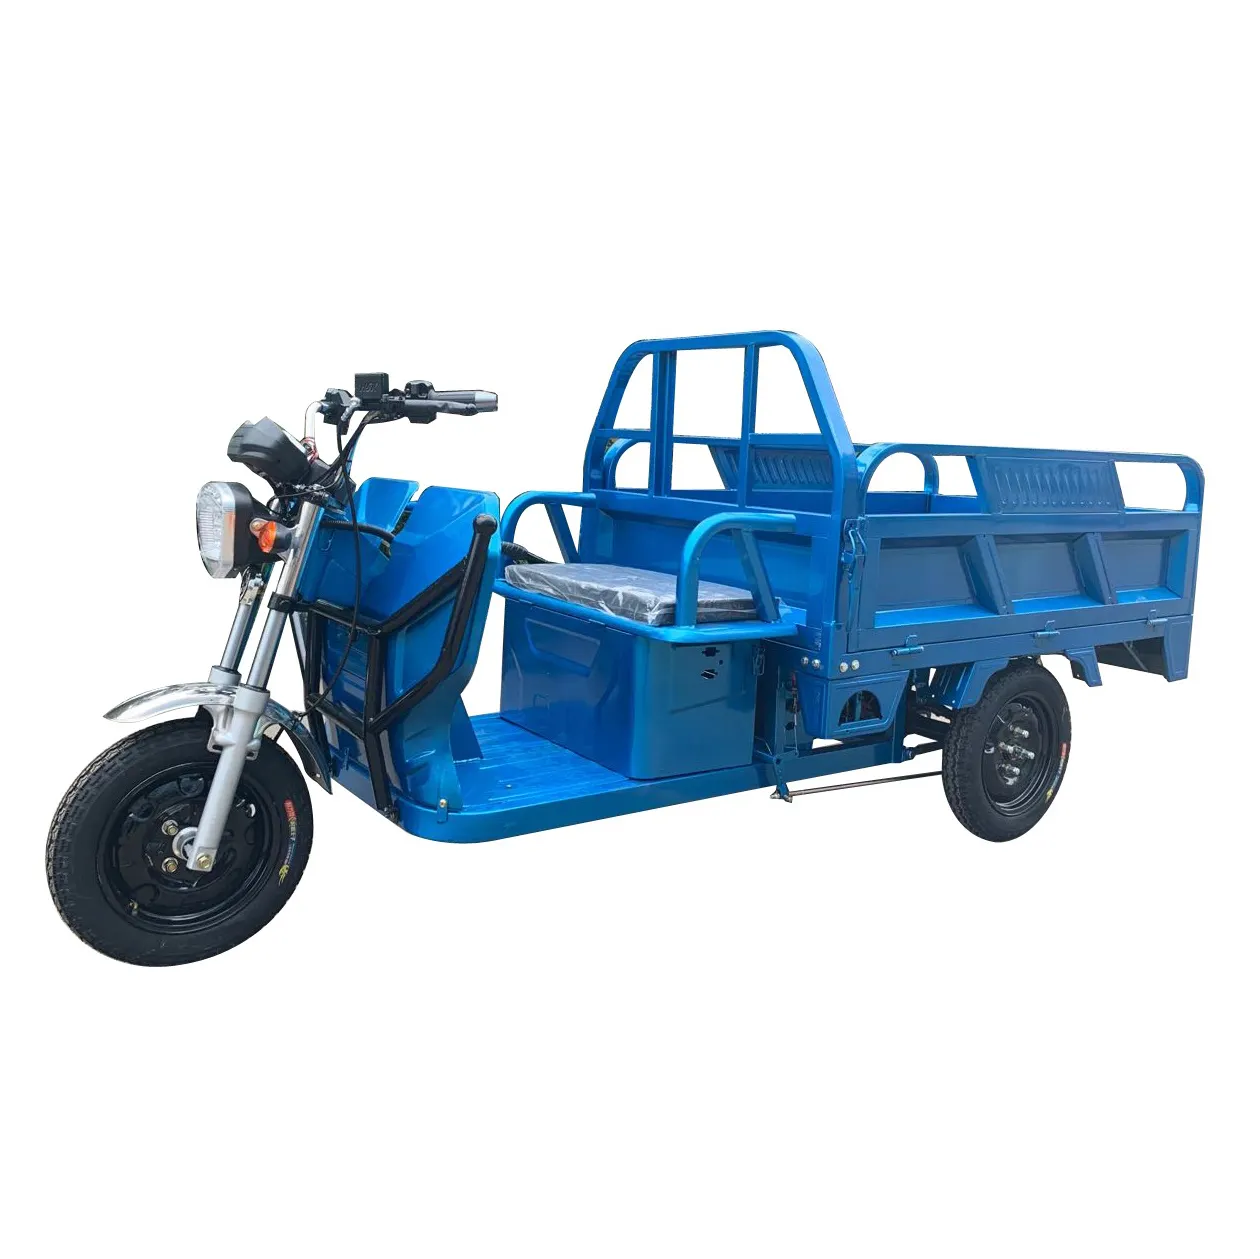 البيئة عربة كهربائية 3 عجلة دراجة ثلاثية العجلات الكهربائية دراجة نارية تصميم جديد الأسرة استخدام مزرعة أخرى دراجة ثلاثية العجلات